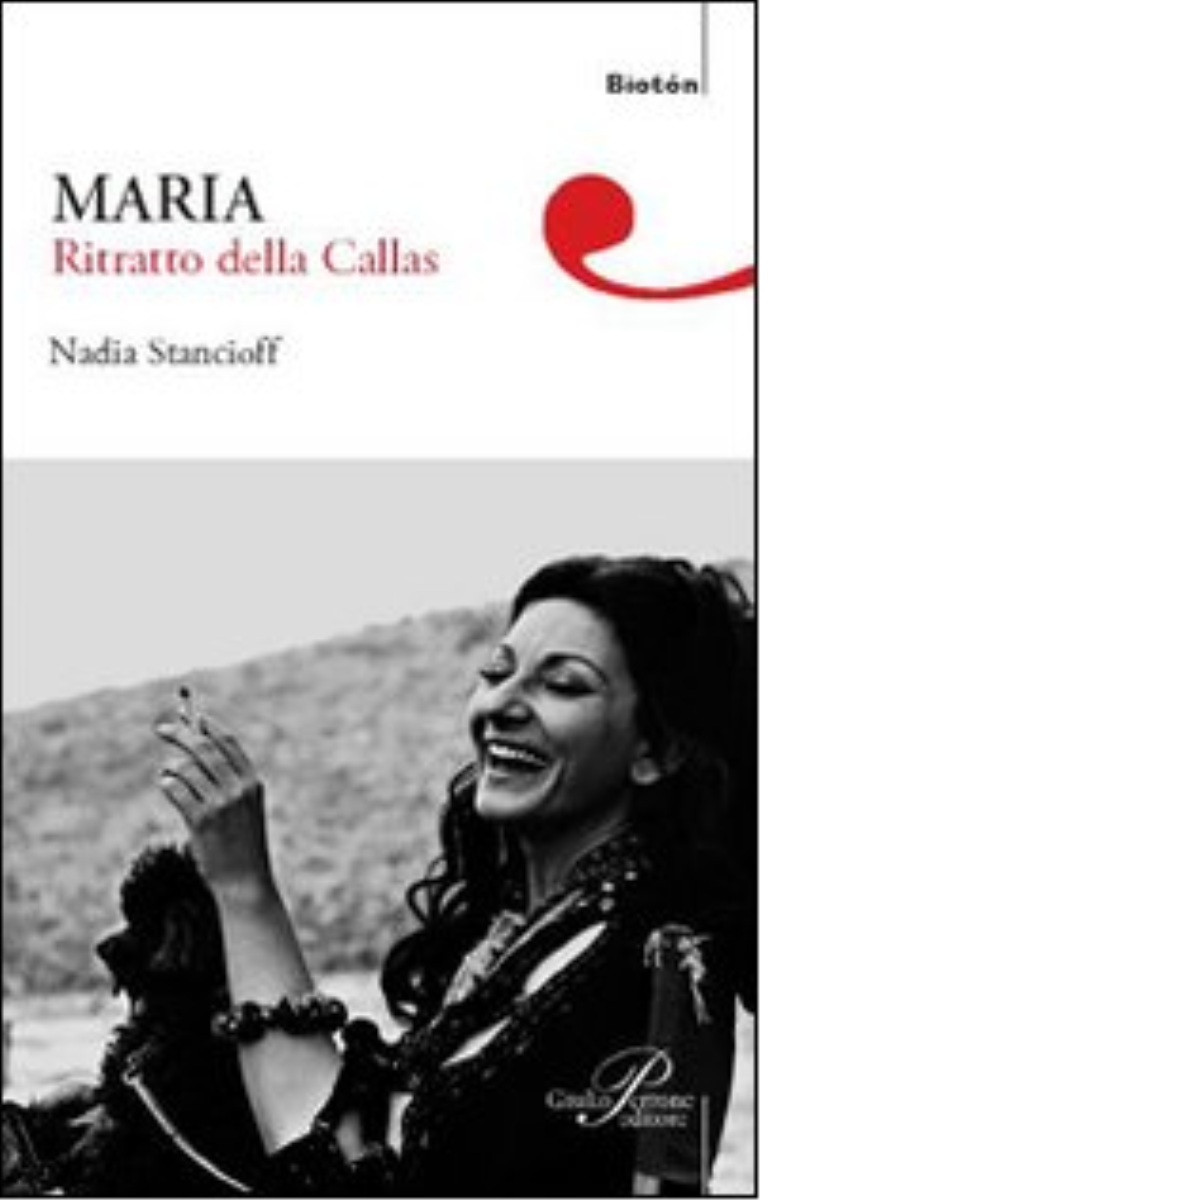 Maria. Ritratto della Callas - Nadia Stancioff - Perrone editore, 2008 libro usato